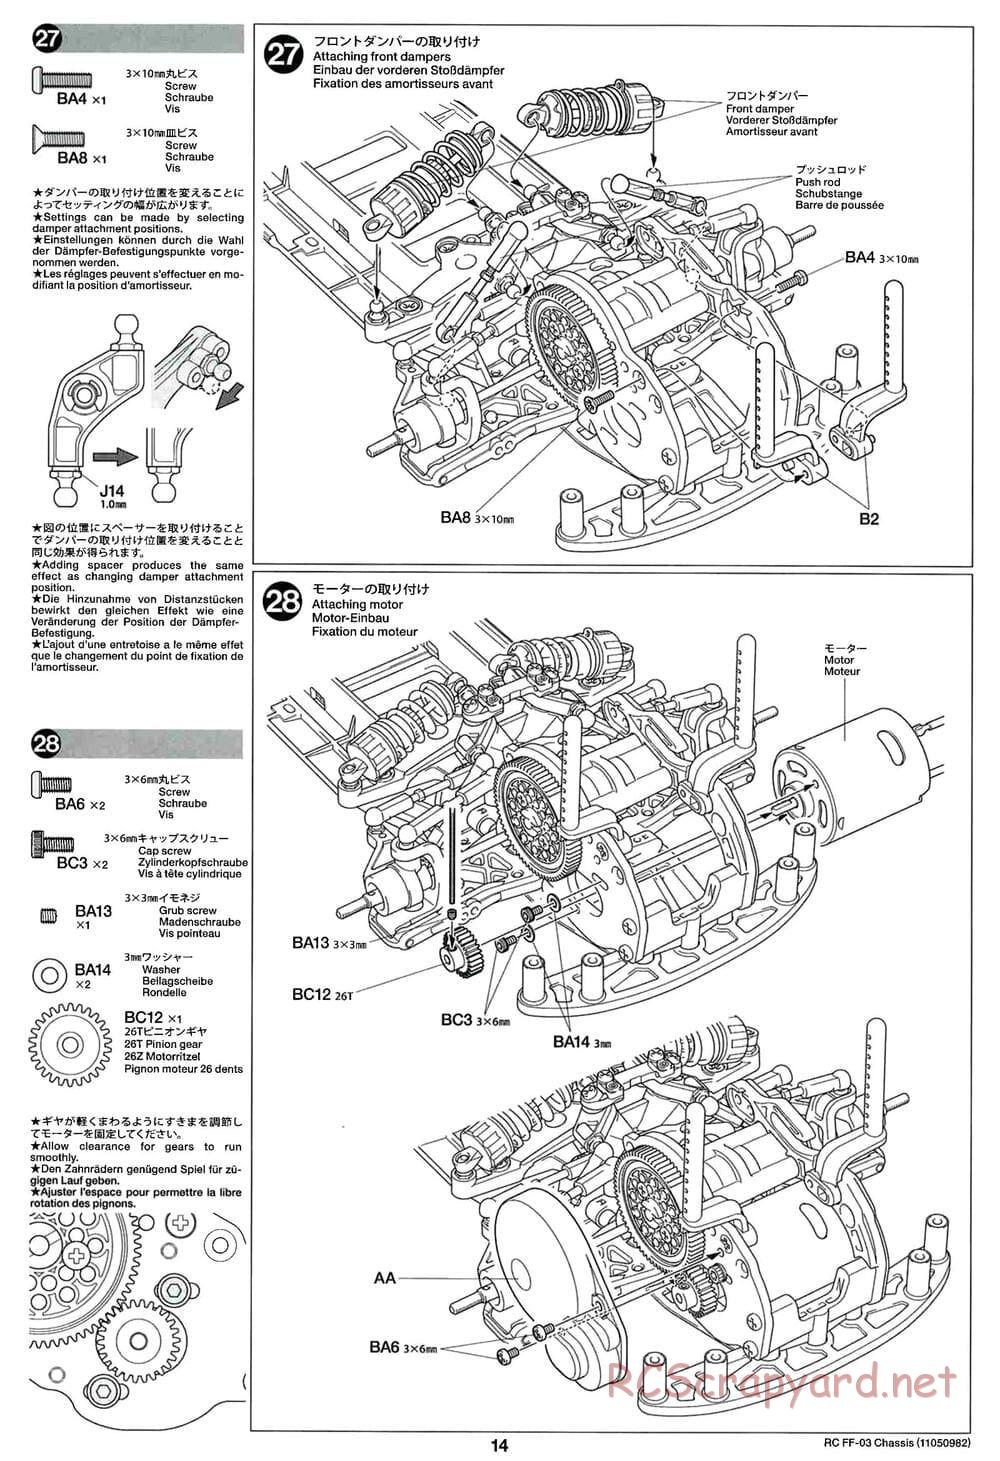 Tamiya - Honda CR-Z - FF-03 Chassis - Manual - Page 14